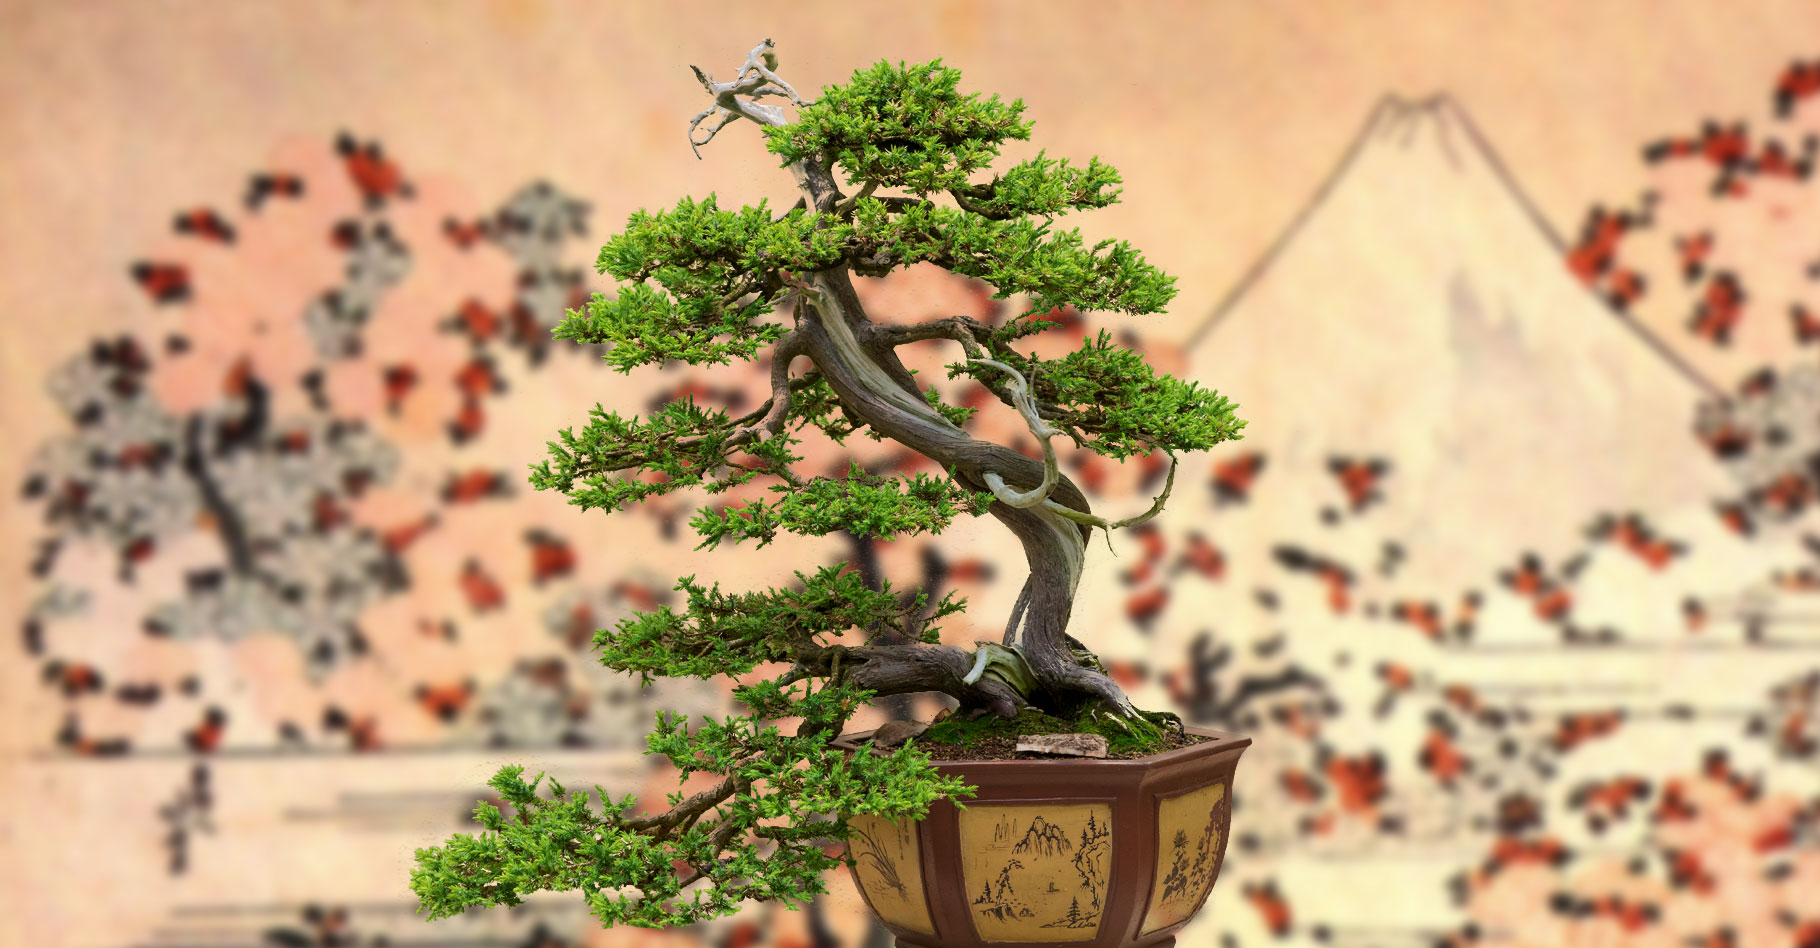 Kengai, bankan ou chokkan : bien choisir son bonsaï